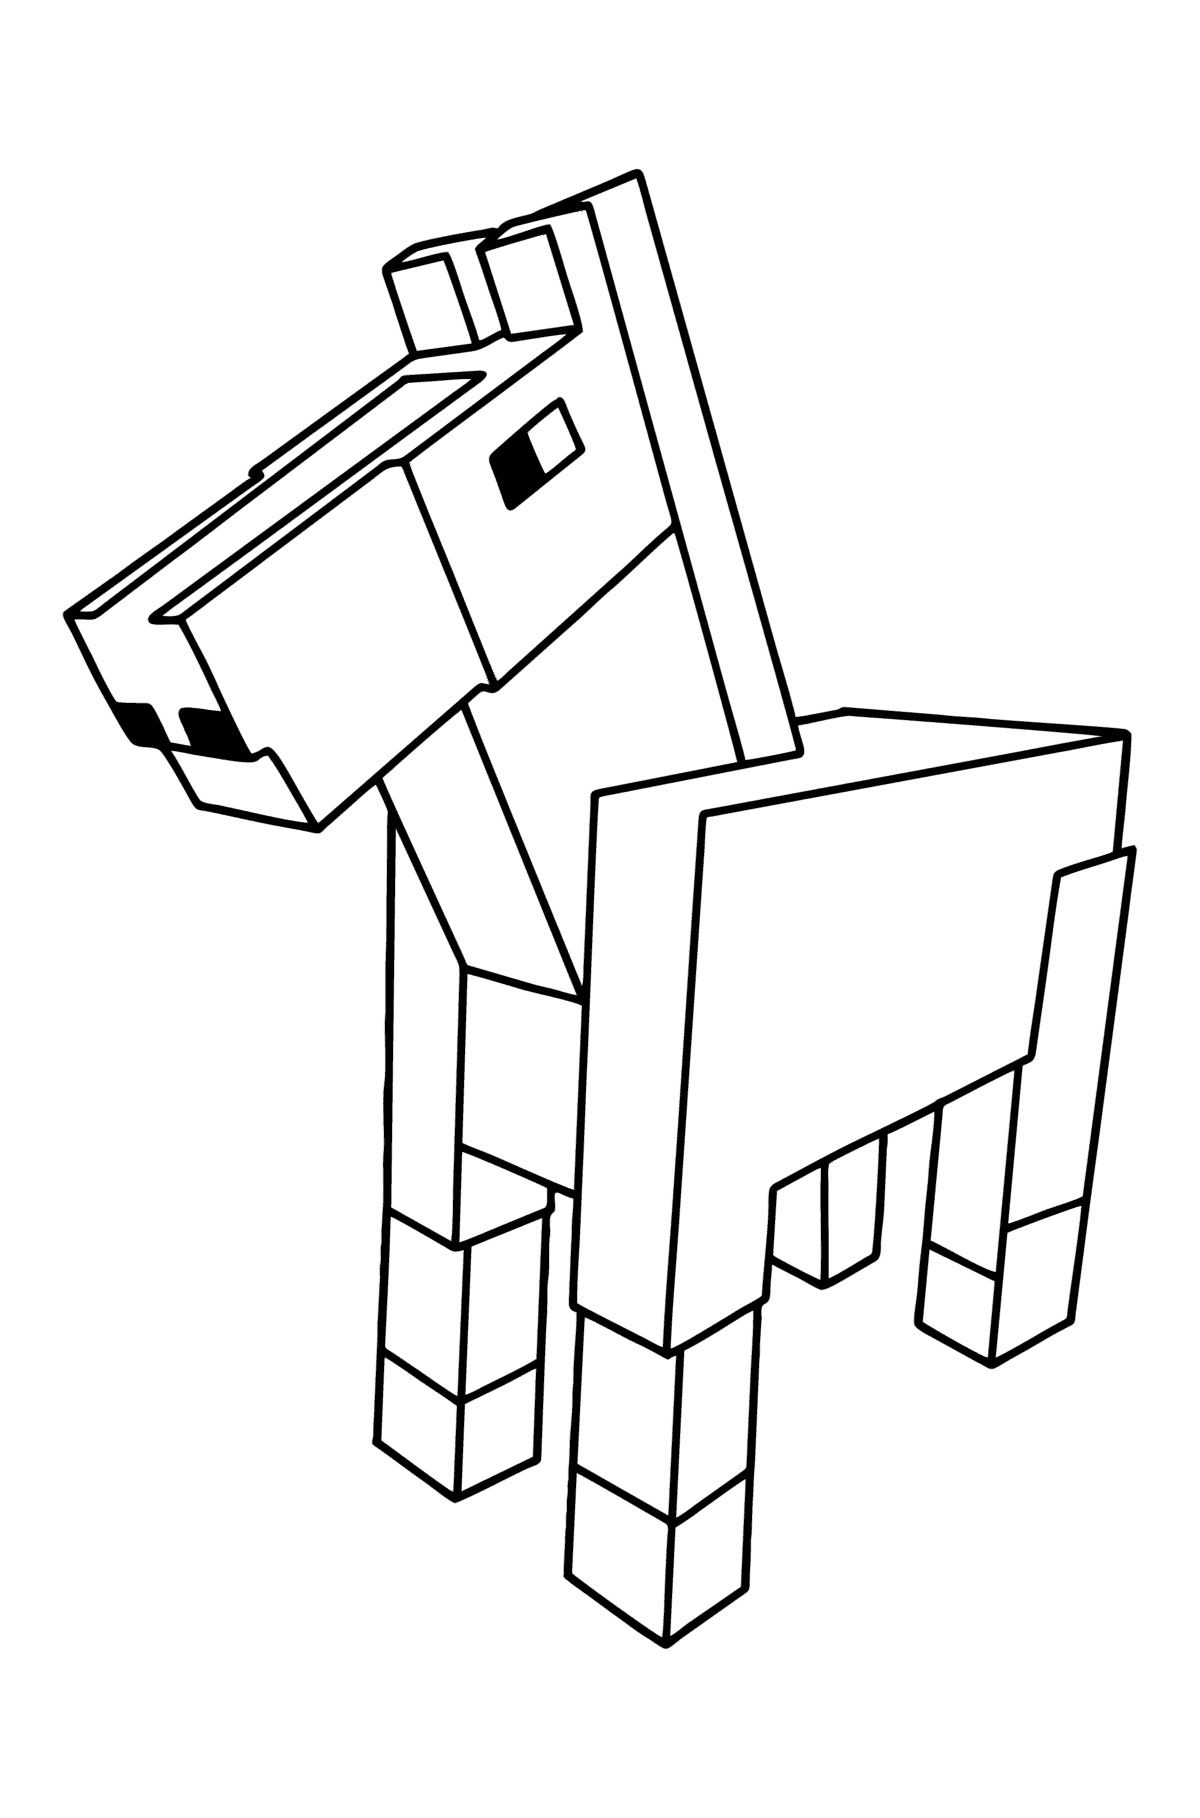 Tegning til fargelegging Minecraft Horse - Tegninger til fargelegging for barn